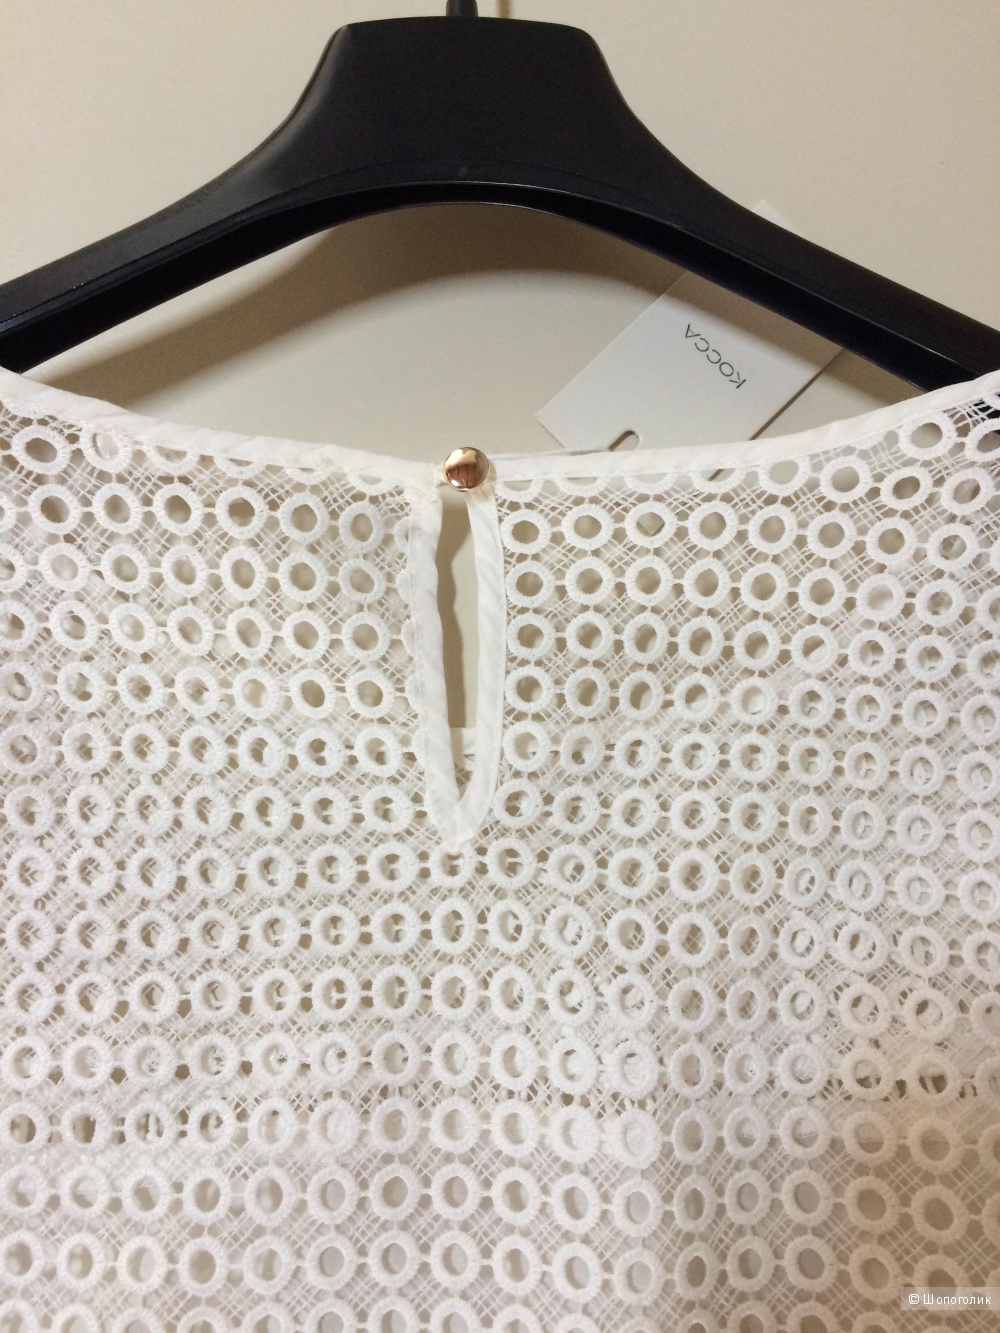 Кружевная блузка Kocca,размер 44-46-48